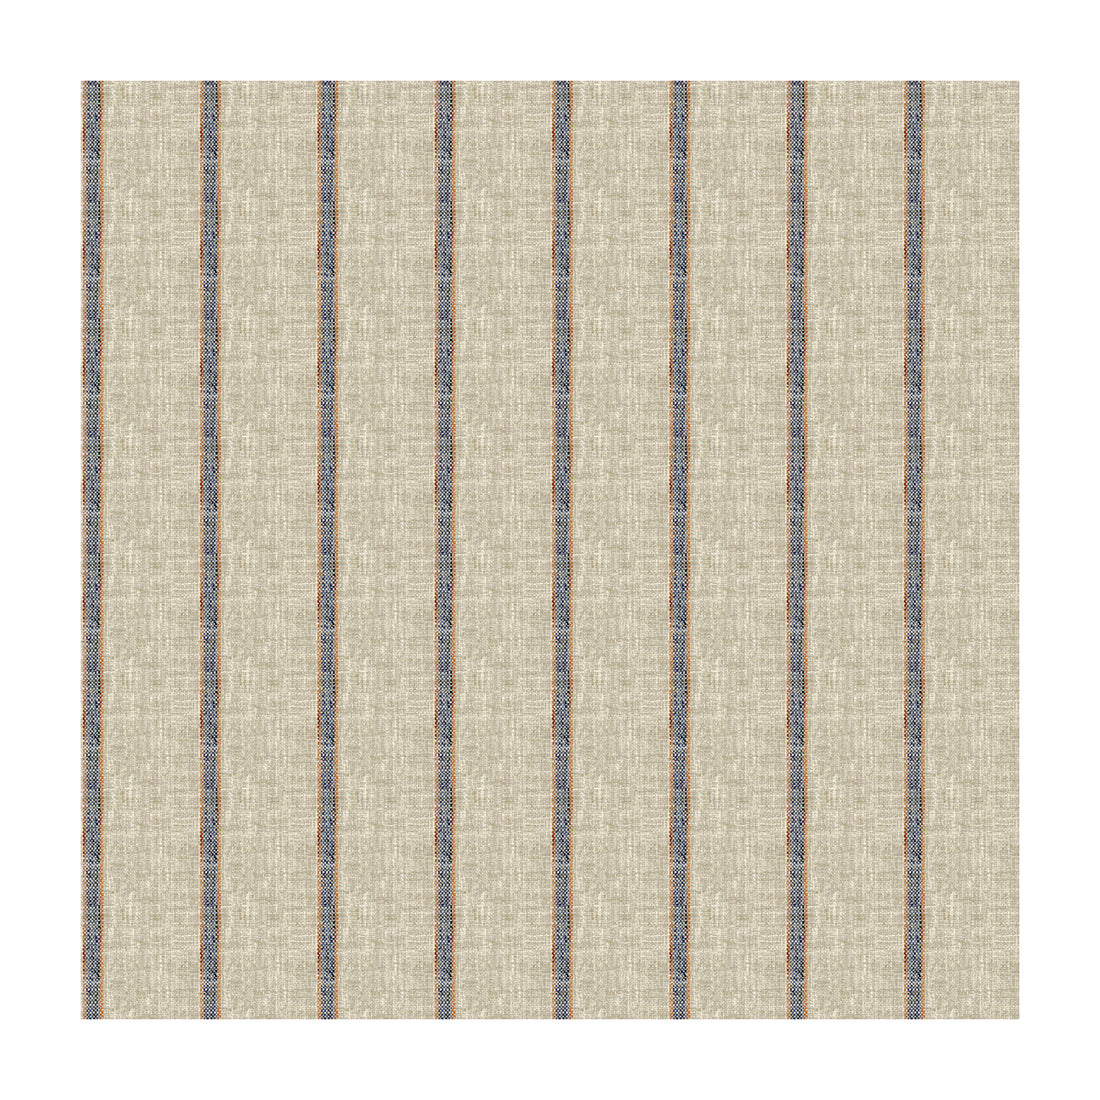 Kravet Basics fabric in 34087-516 color - pattern 34087.516.0 - by Kravet Basics